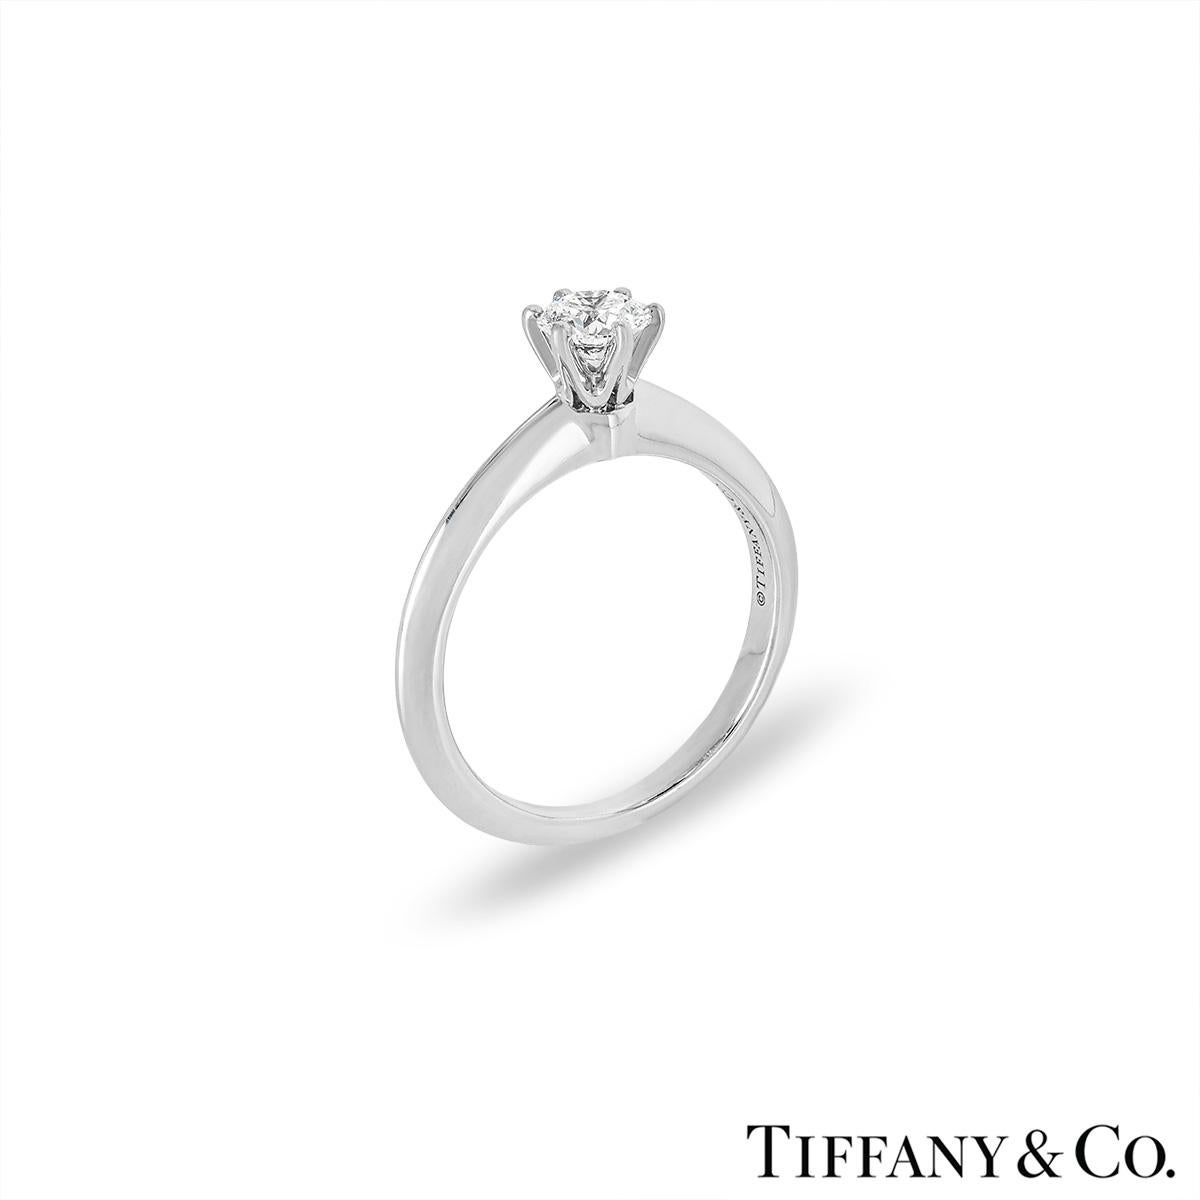 Magnifique bague solitaire en platine à diamant de Tiffany & Co. de la collection Setting. Le solitaire présente un diamant rond de taille brillant serti au centre dans une monture à 6 griffes pesant 0,38ct, de couleur H et de pureté VS1. Le diamant